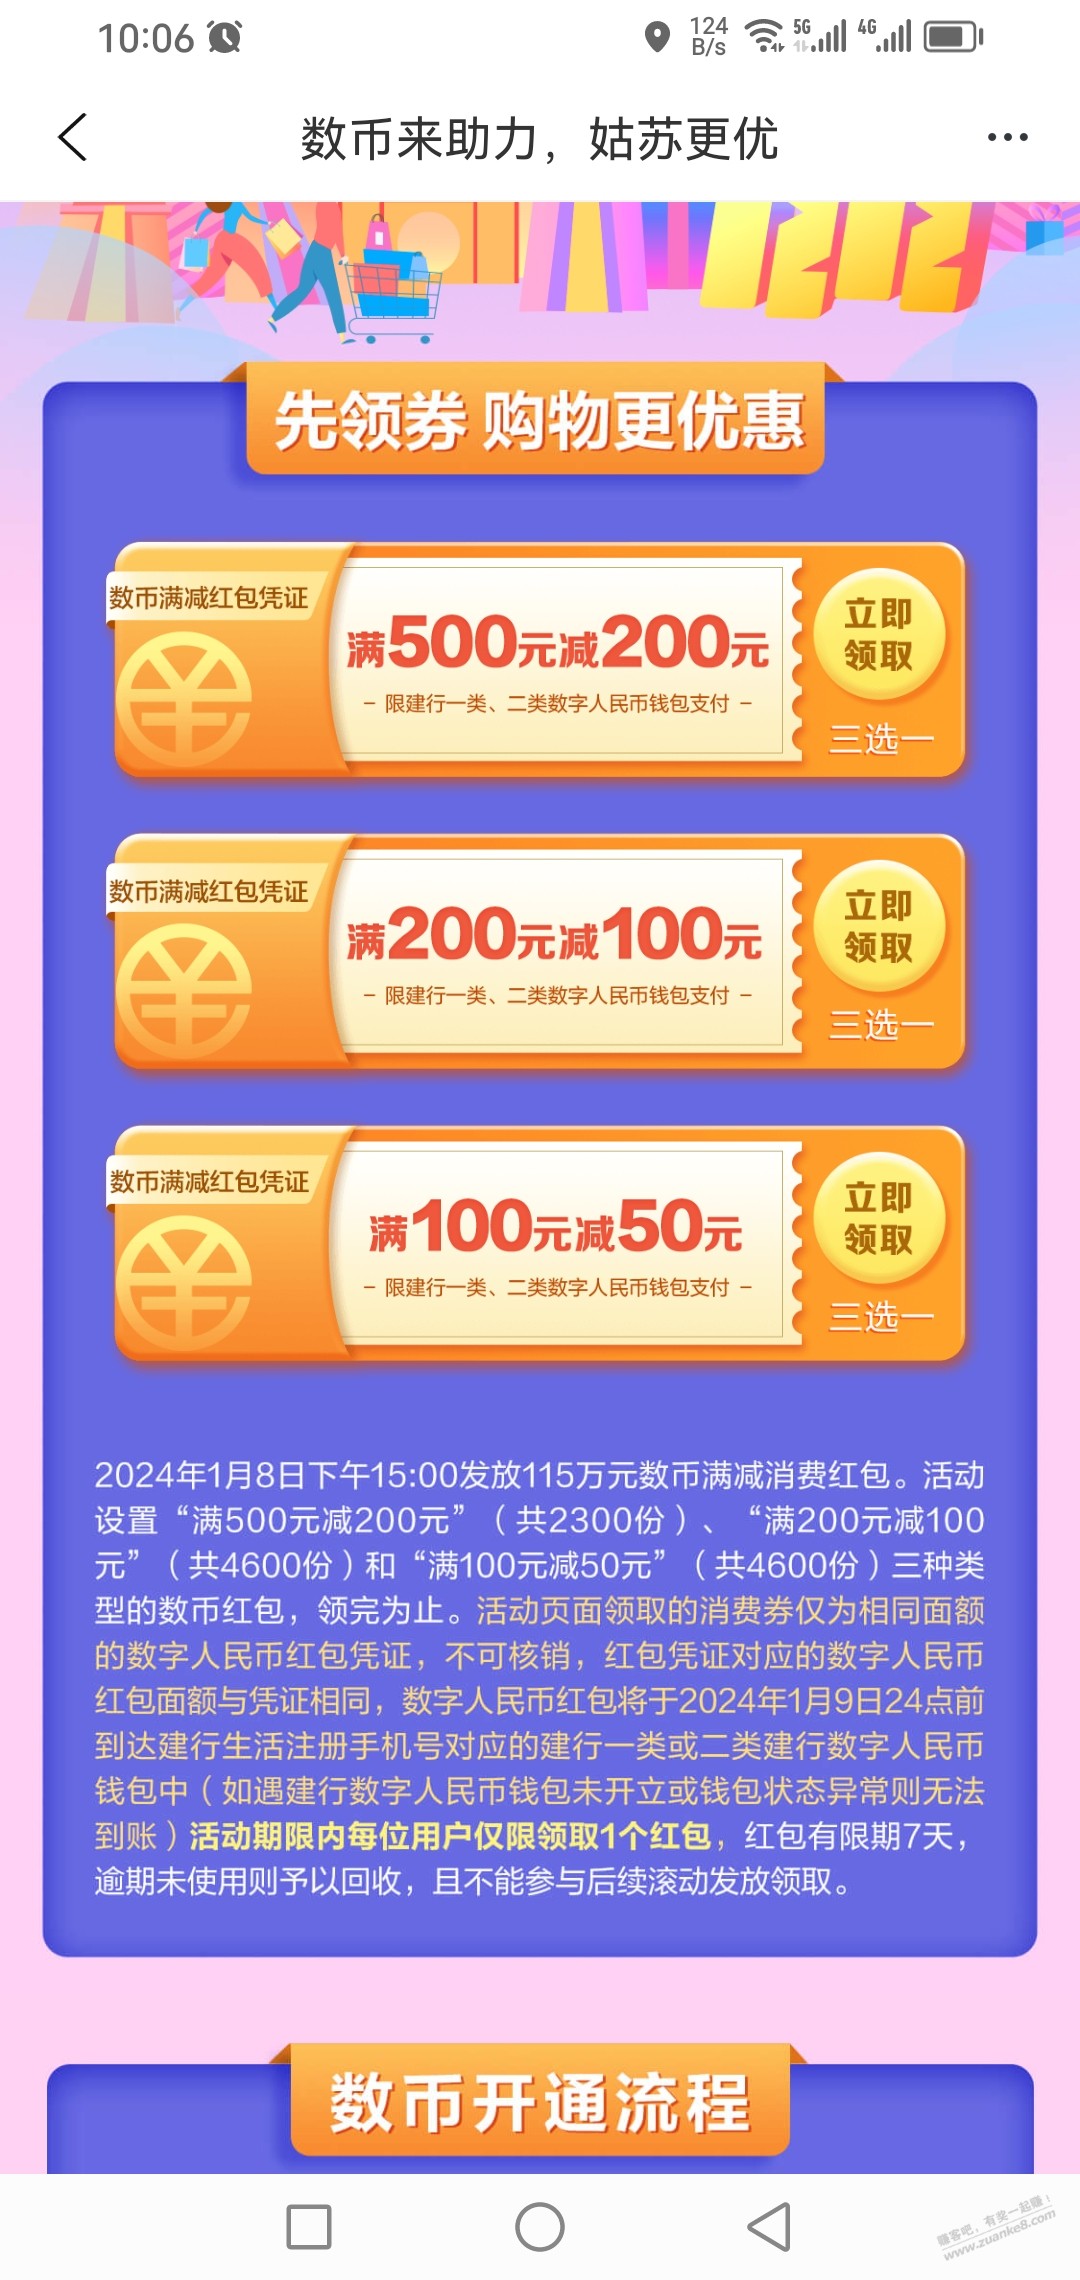 苏州数币优惠券又来了!!500-200-惠小助(52huixz.com)